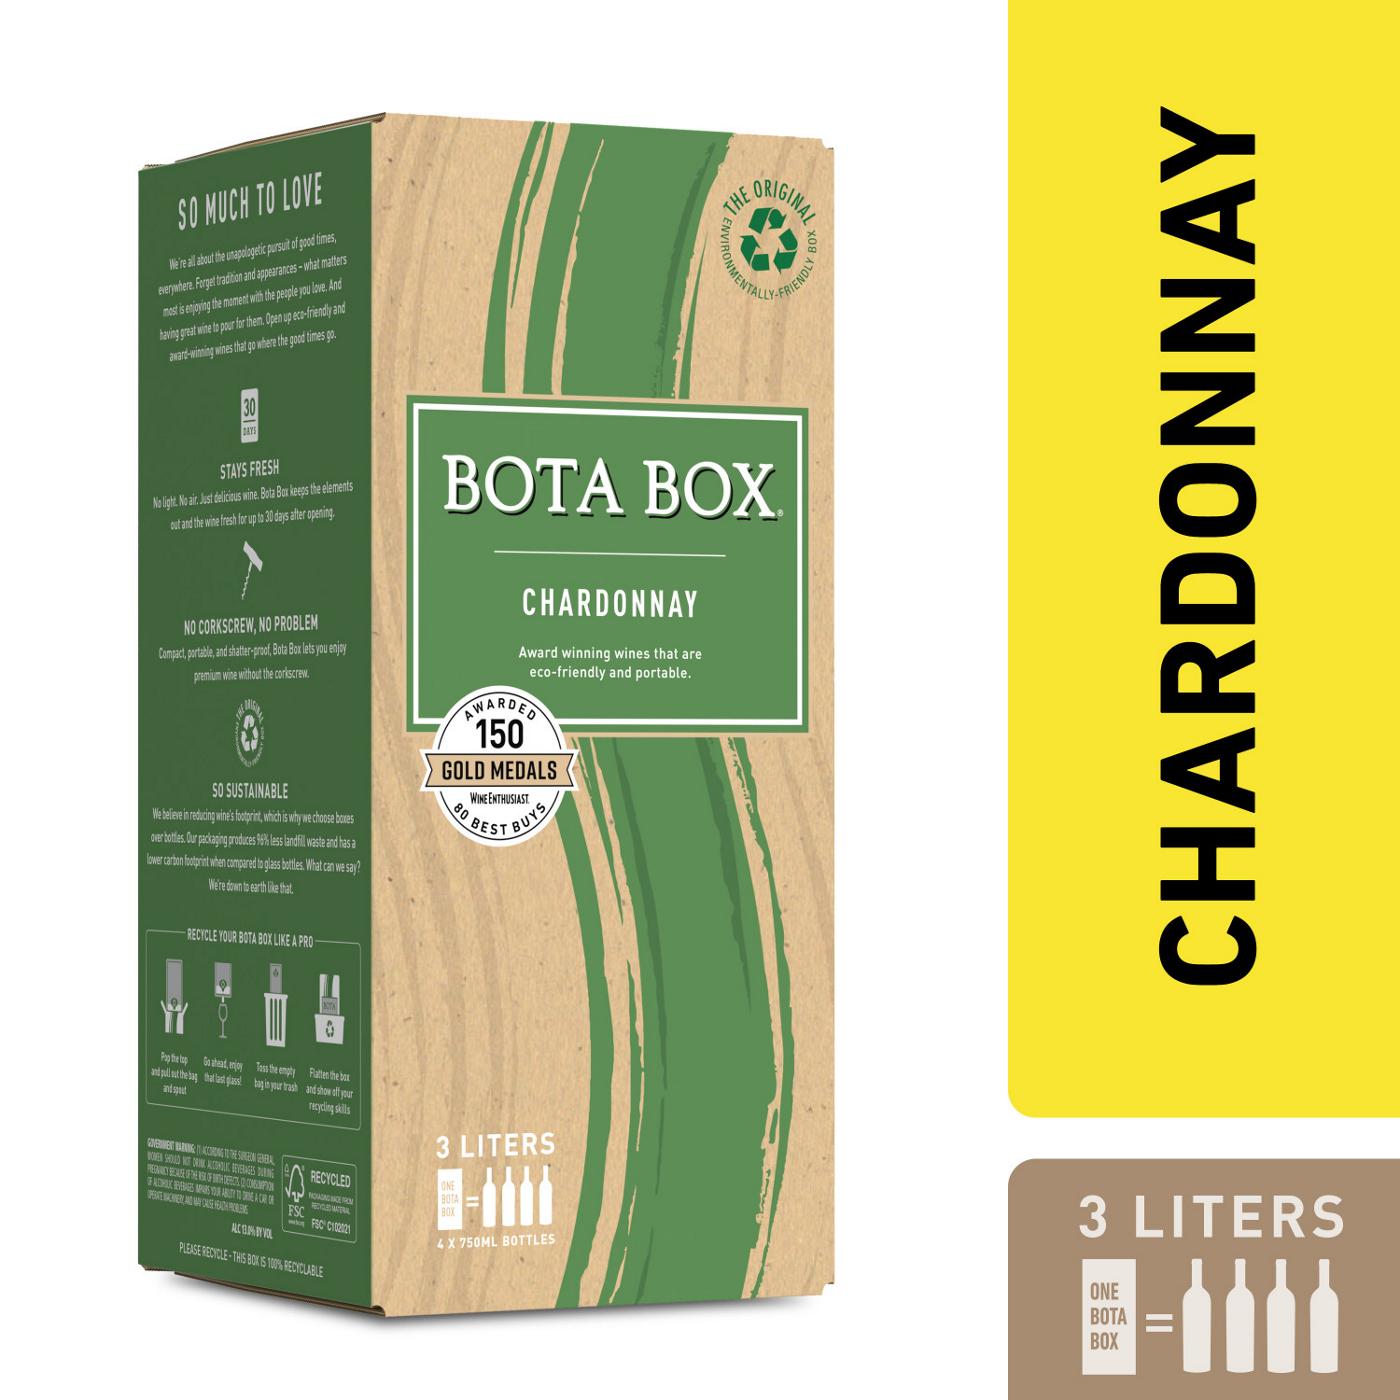 Bota Box Chardonnay Boxed Wine; image 2 of 4